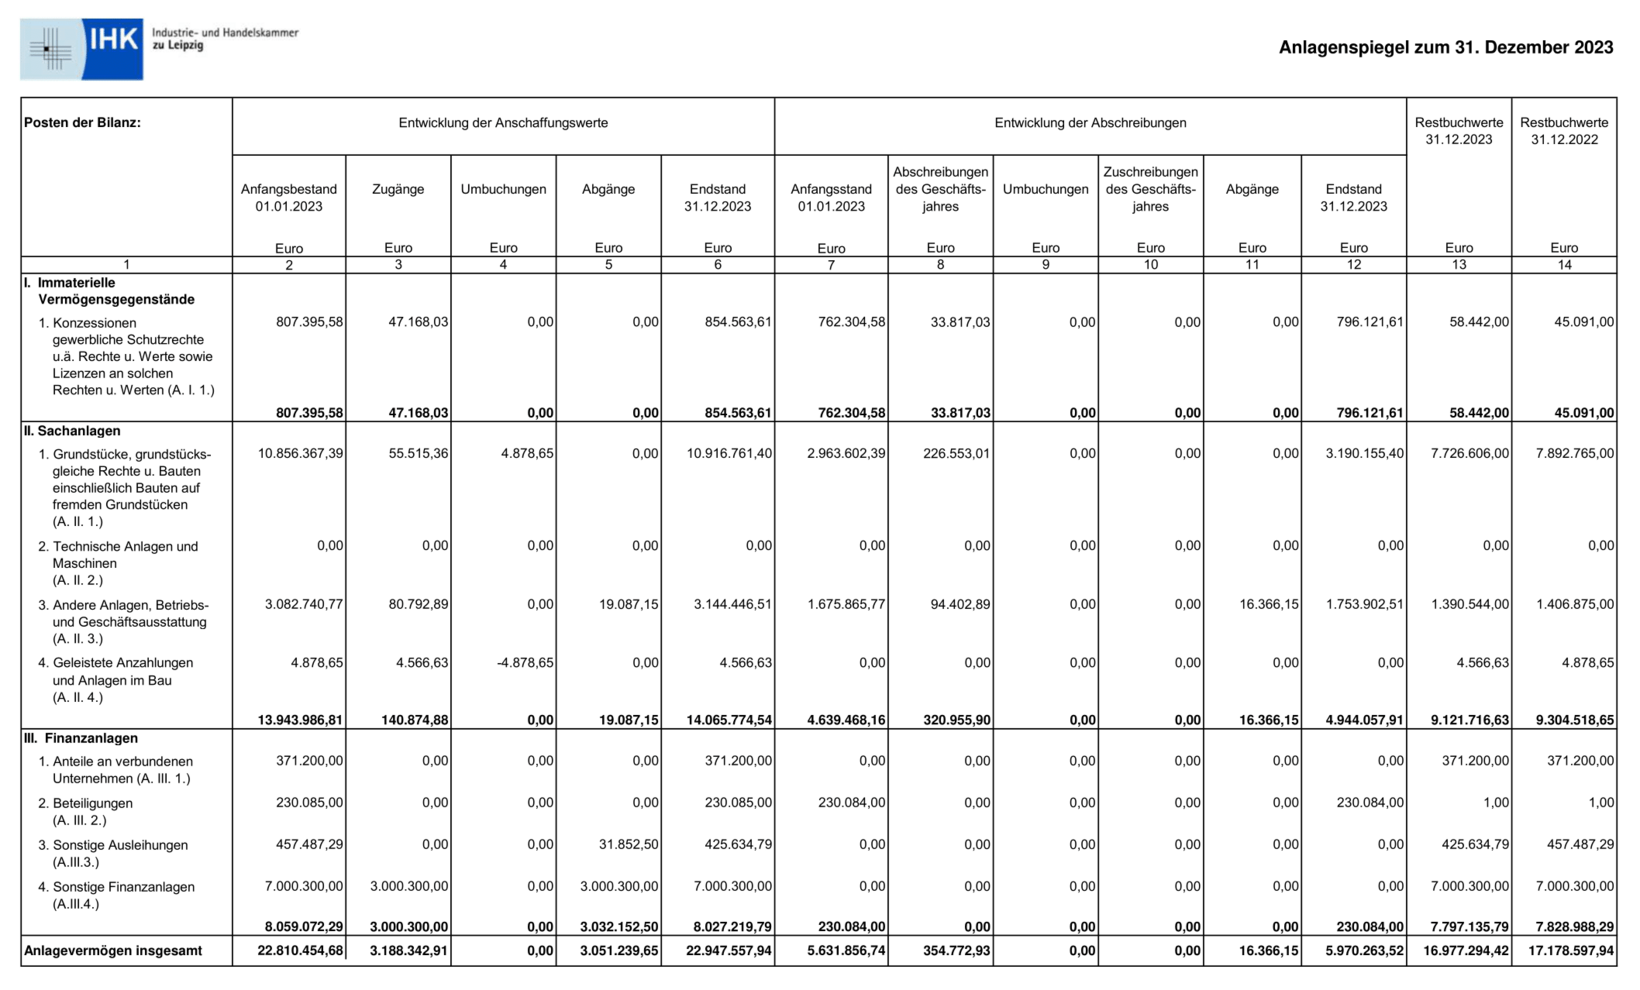 Anlagenspiegel 2023 | Anlagevermögen insgesamt: 17.178.597,94 €